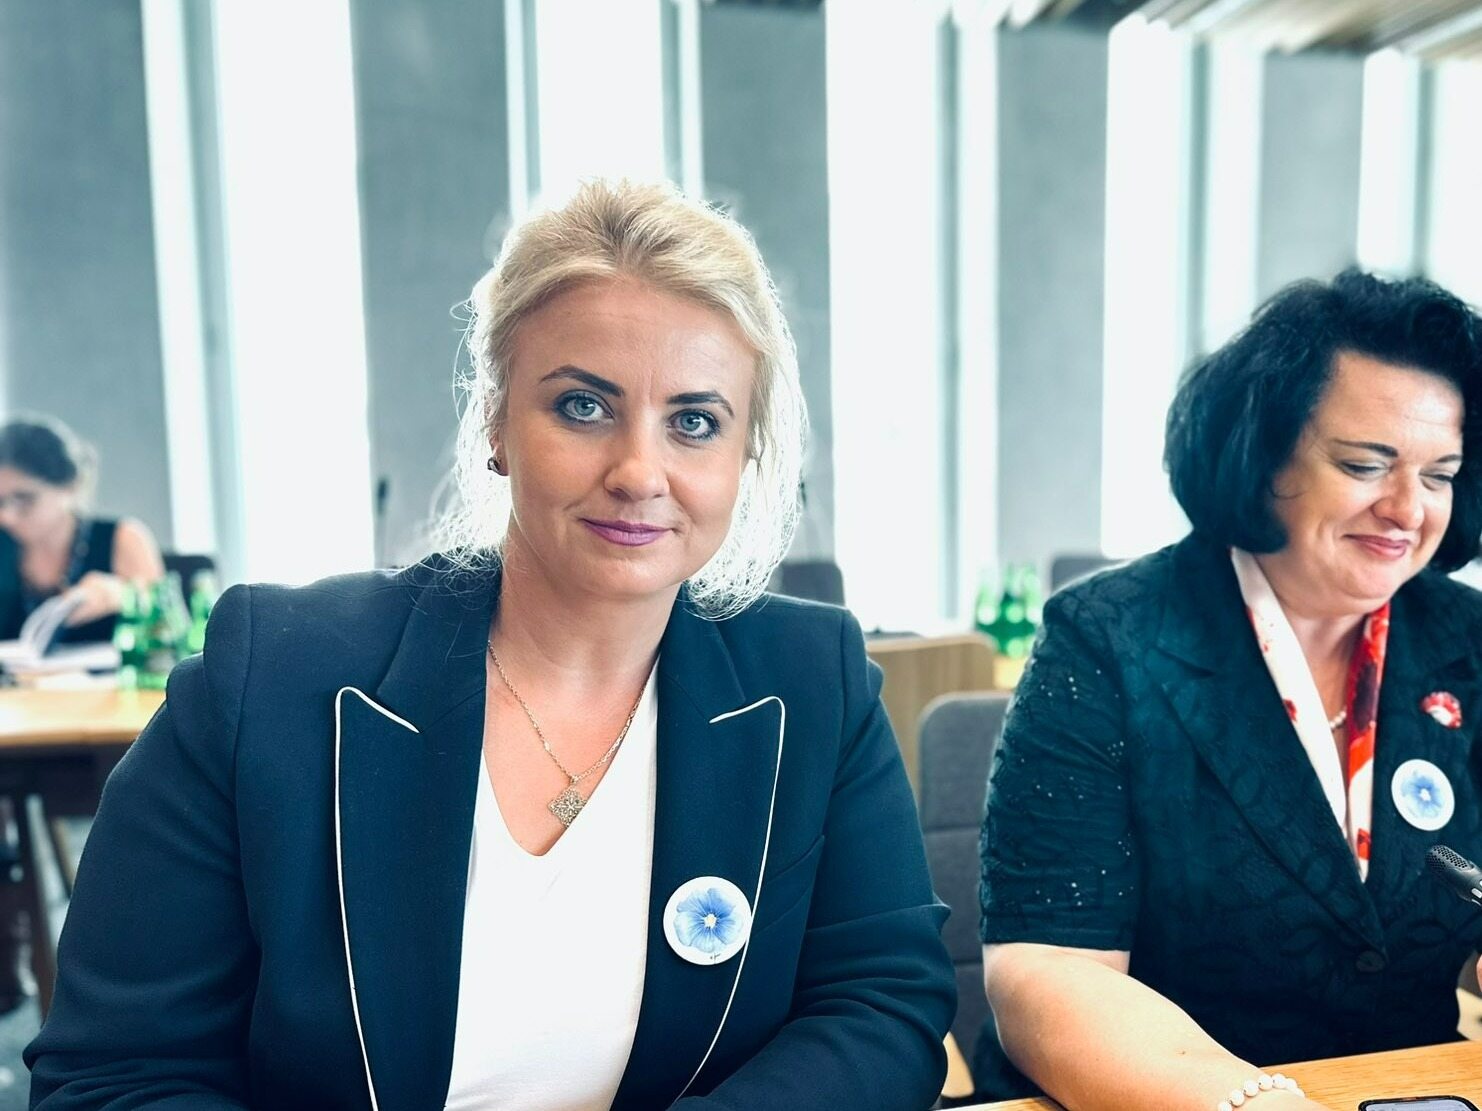 Katarzyna Sójka for "Wprost" regarding Hołownia's allegations.  "I was slandered"